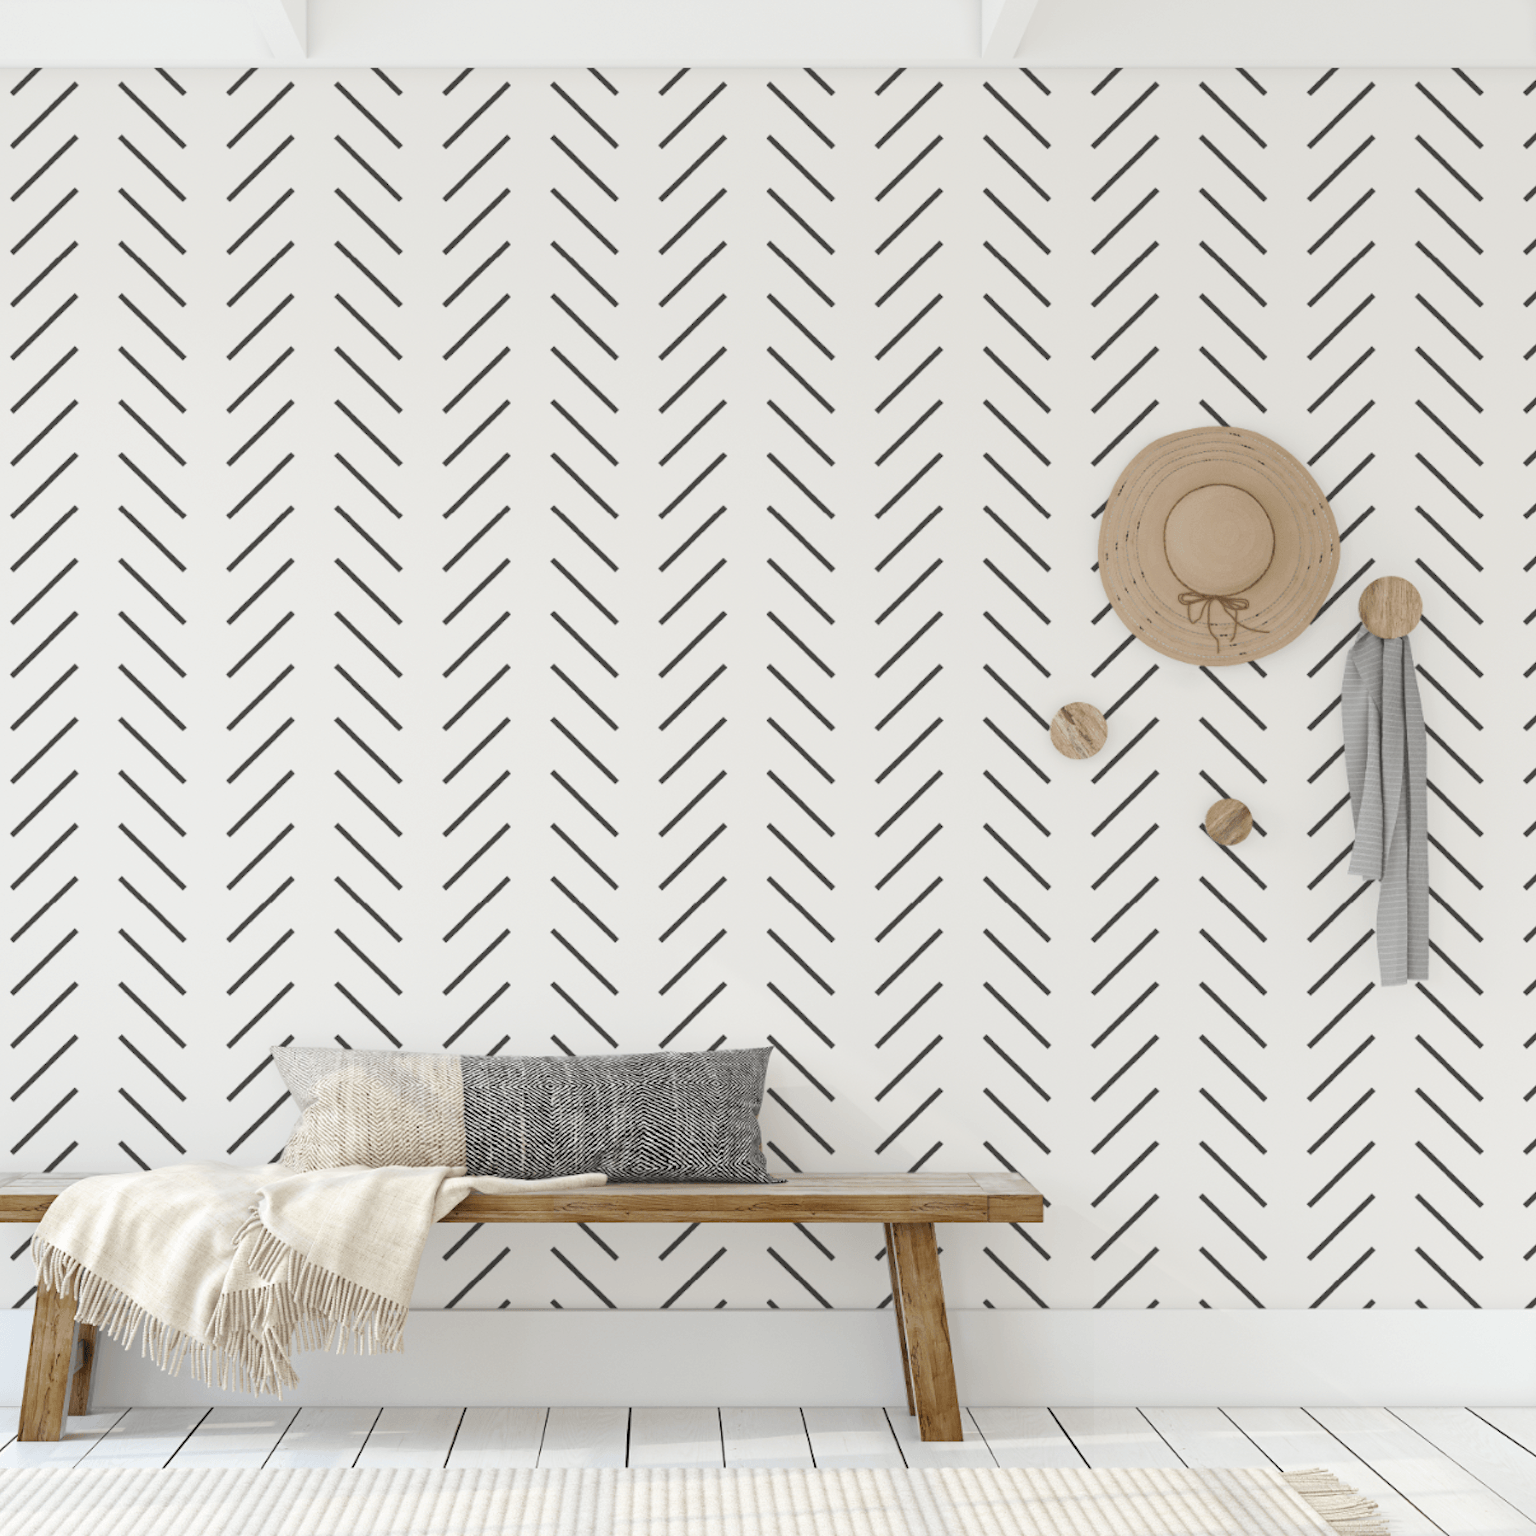 5584-10 Modern Wallpaper textured mosaic tile white black gray red 3D –  wallcoveringsmart